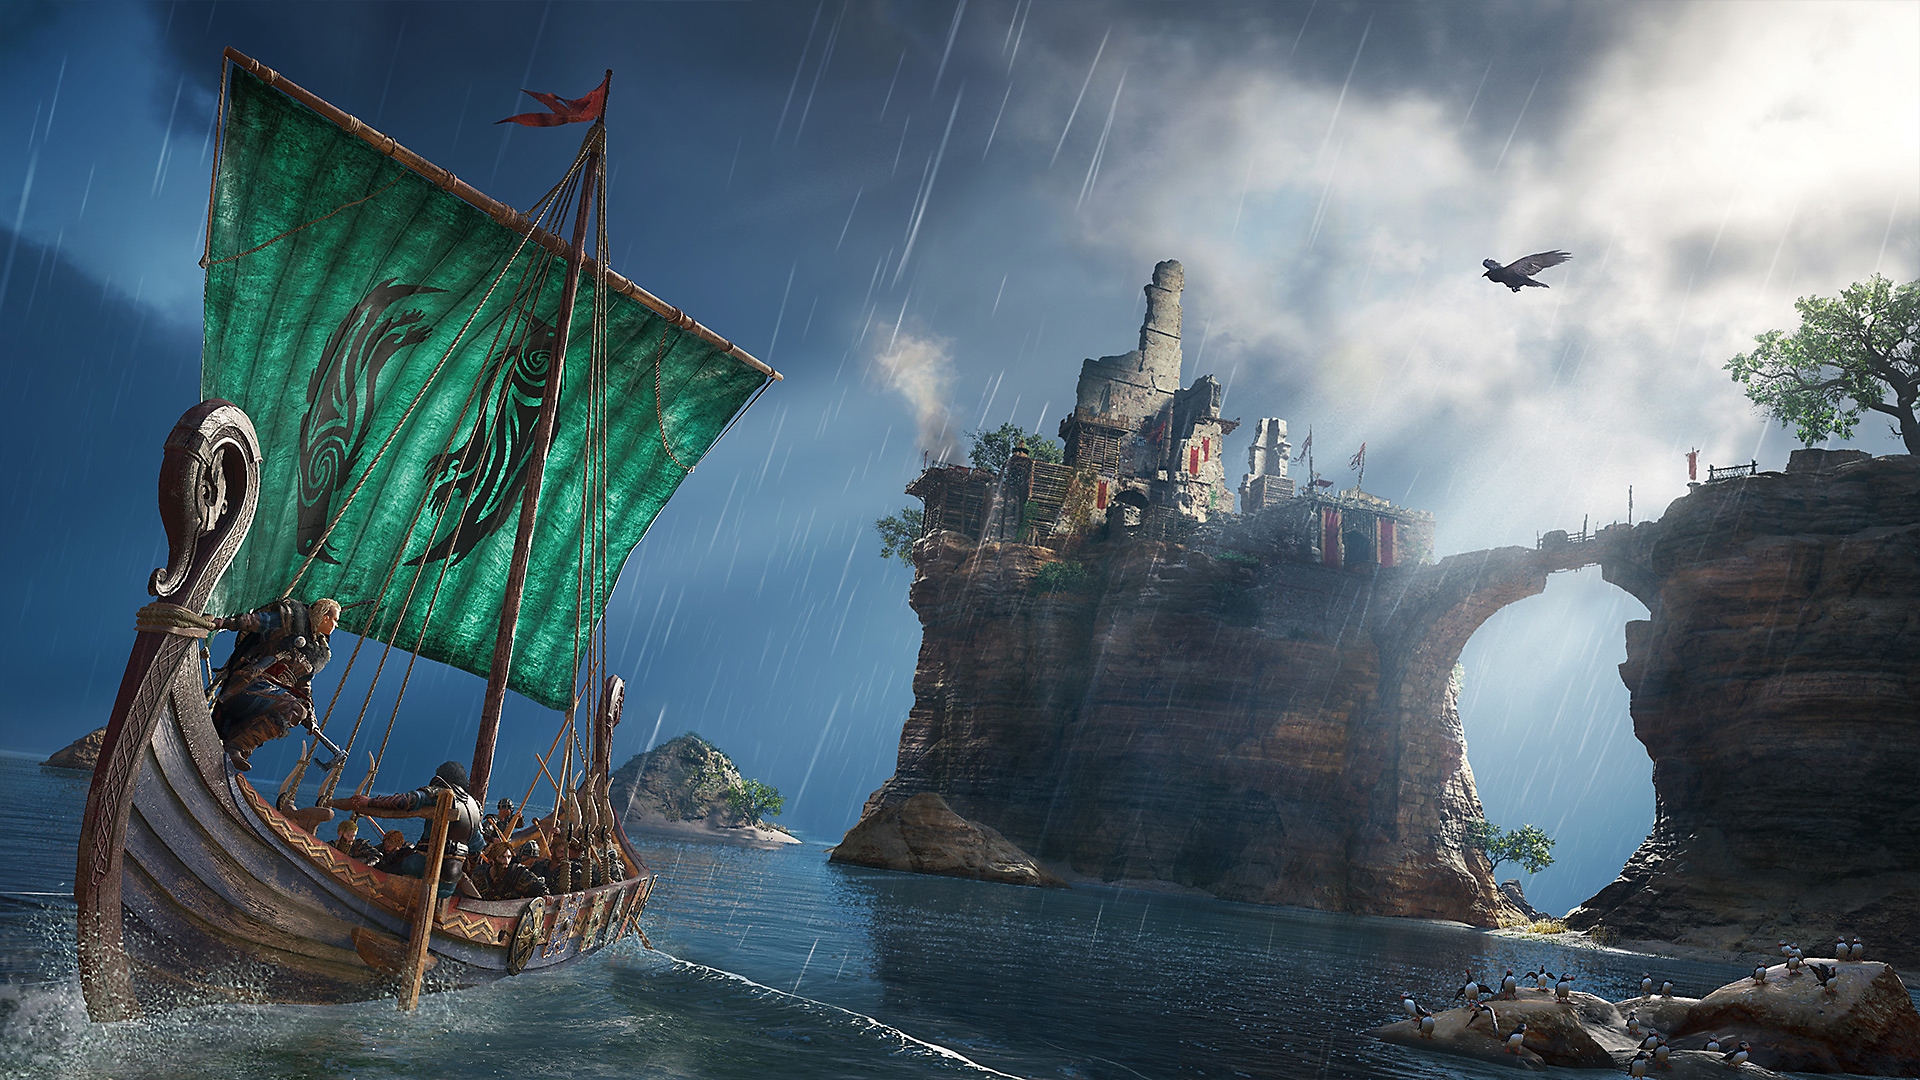 Captura de pantalla de Assassin's Creed Valhalla que muestra al personaje en un barco vikingo mirando hacia una isla elevada en el horizonte